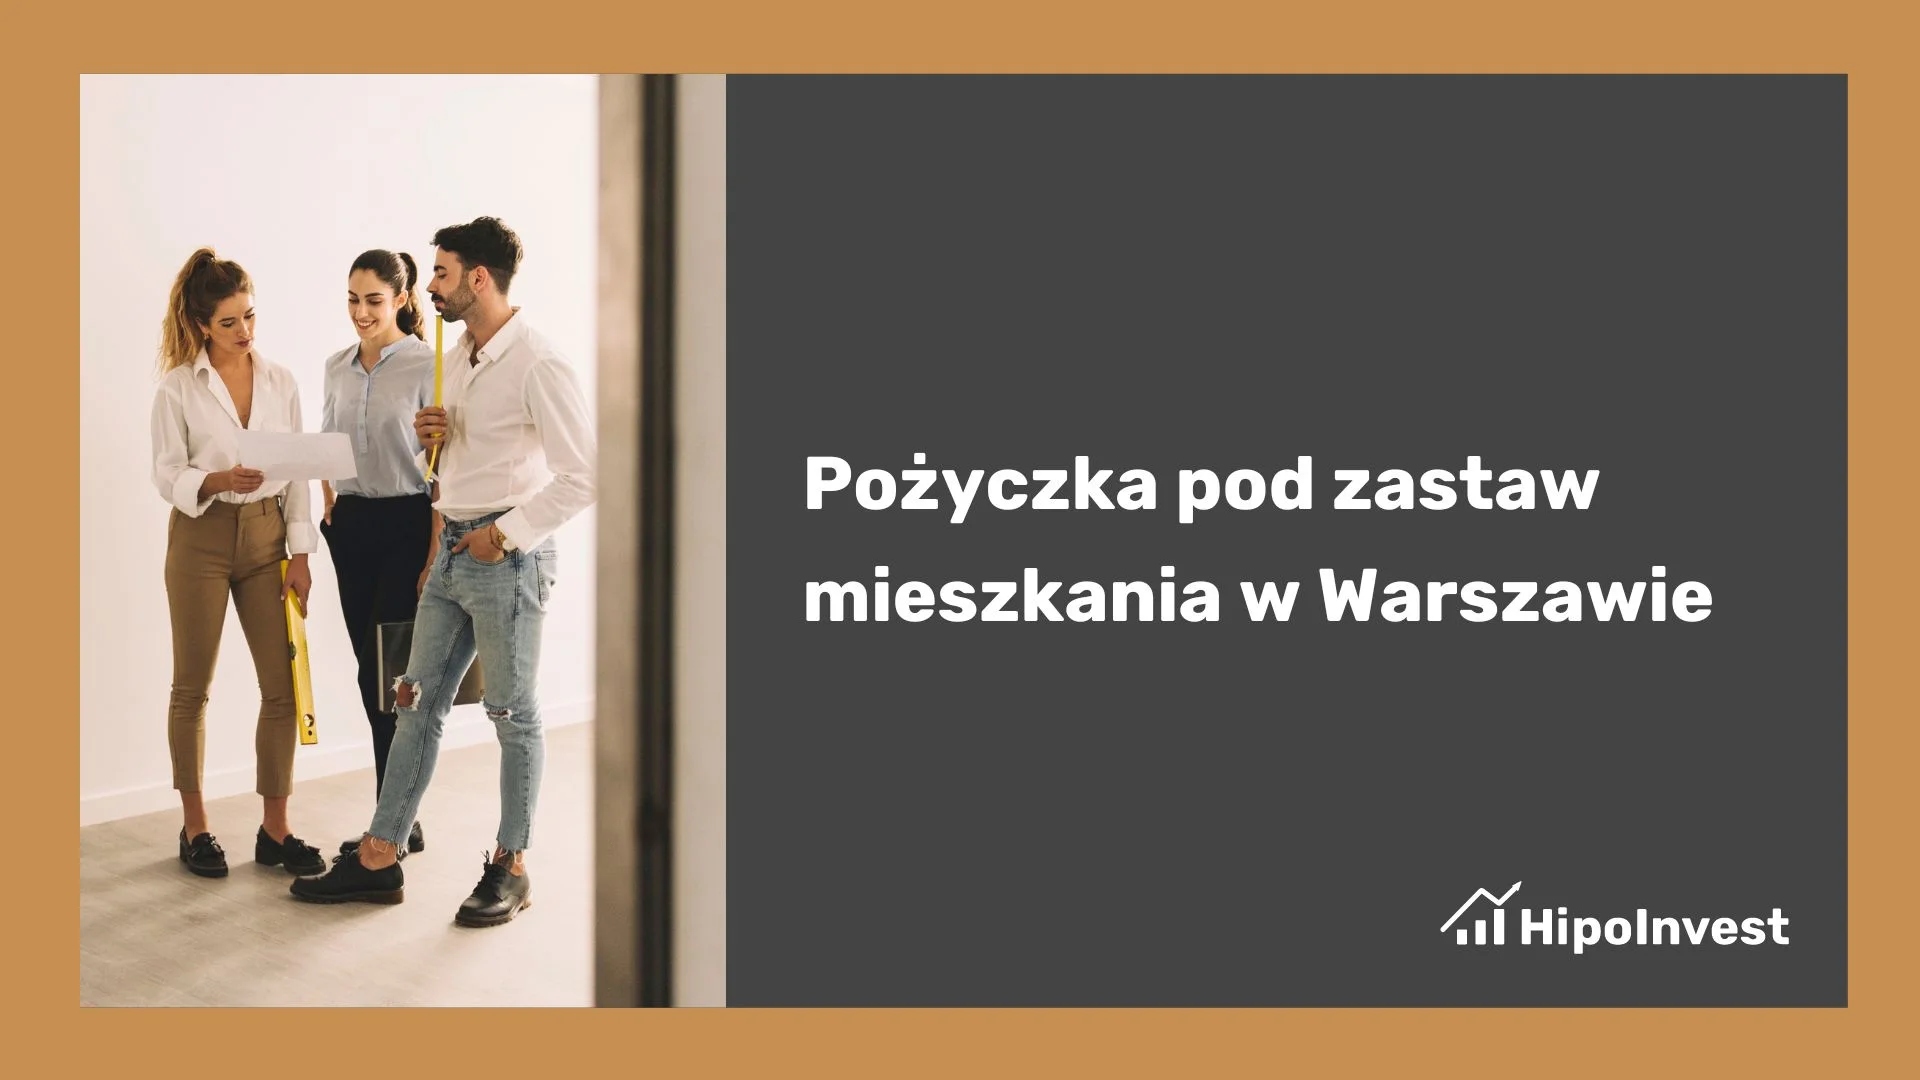 Pożyczki pod zastaw Warszawa dla firm
